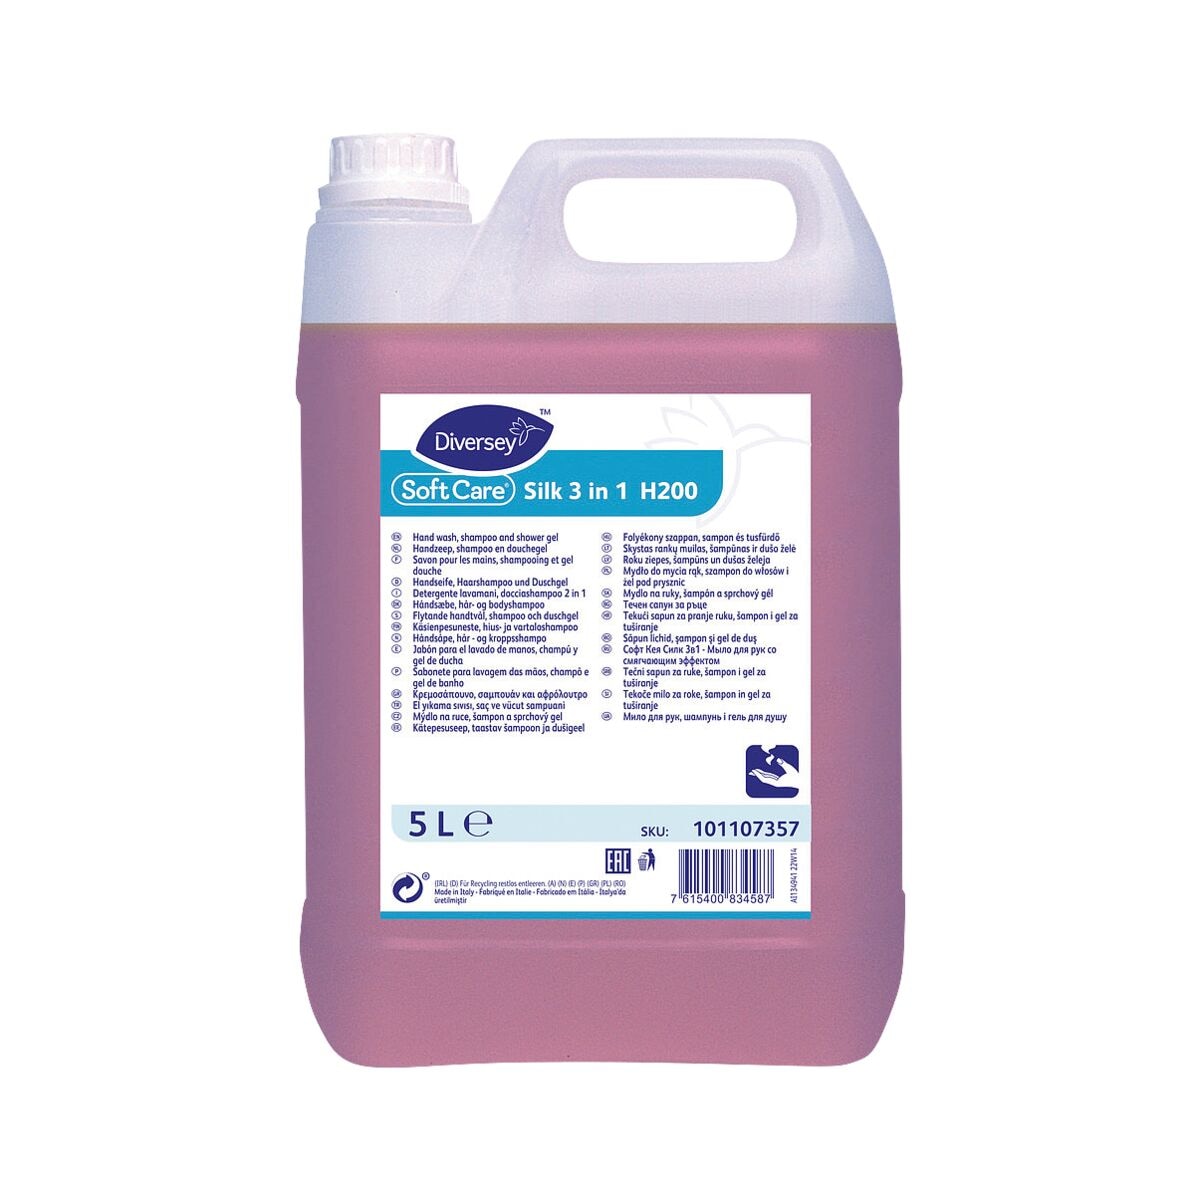 DIVERSEY 3in1 Seifenlotion Soft Care Silk 5 Liter